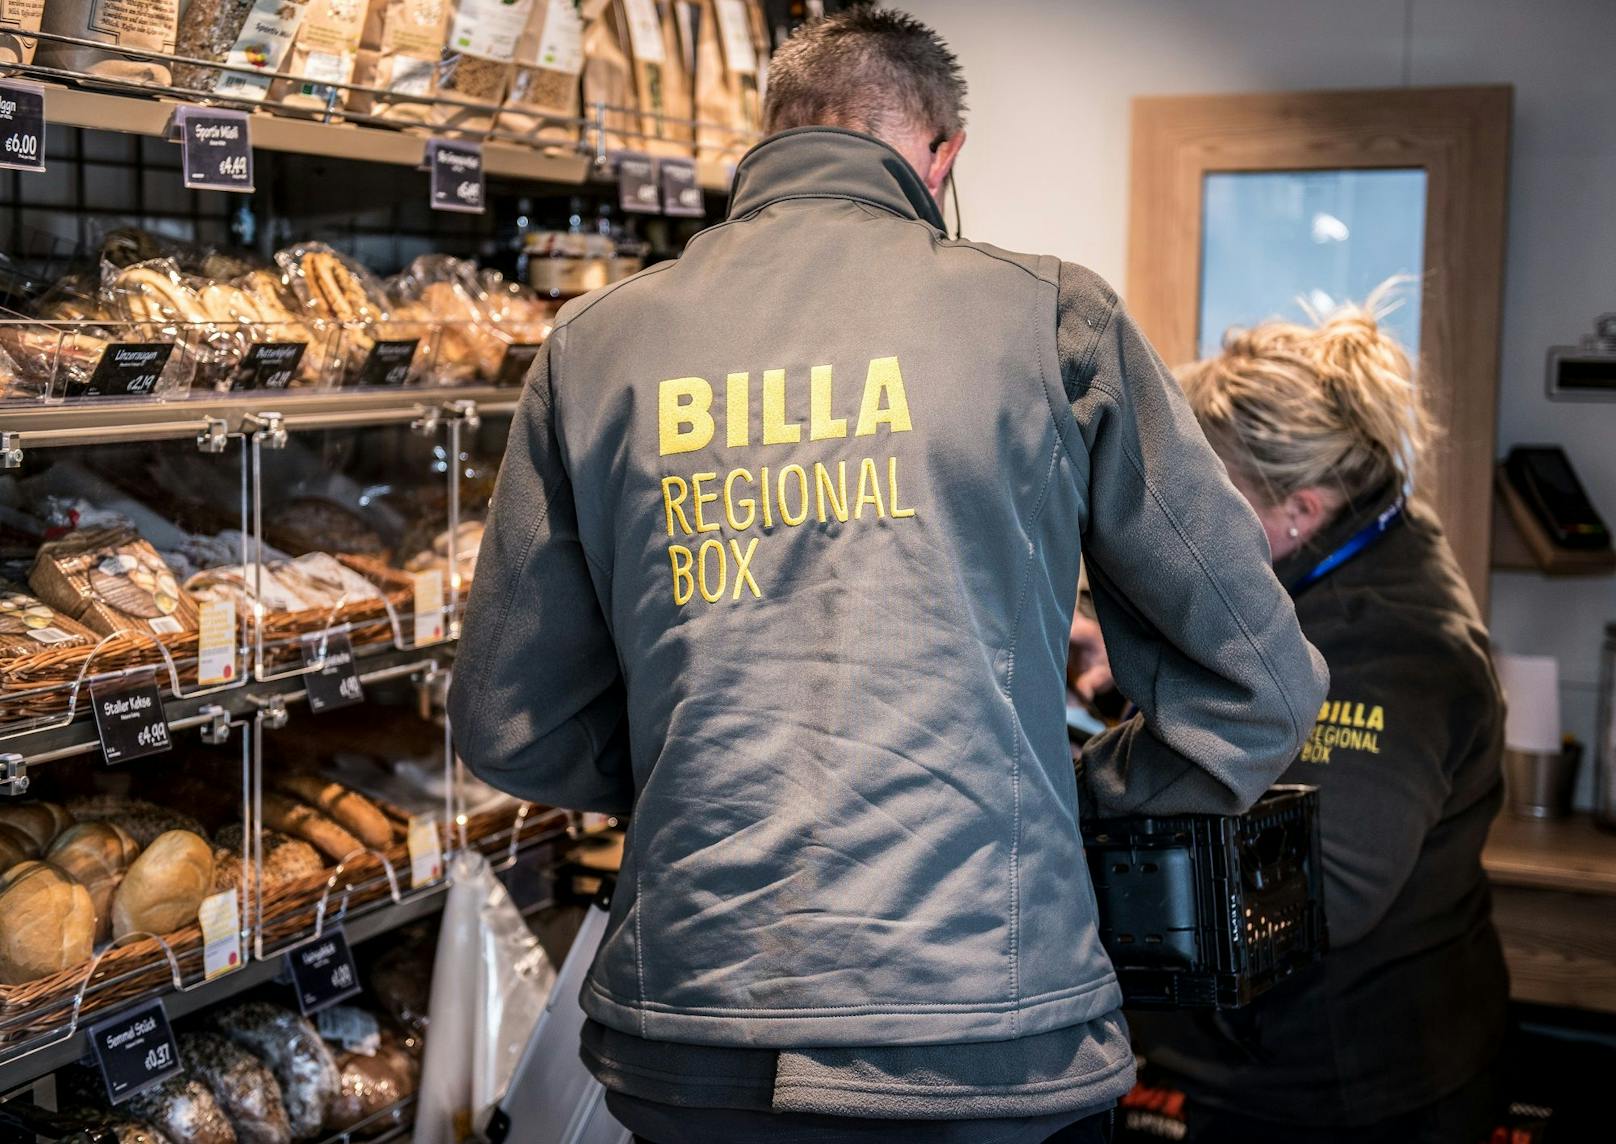 Die Billa-Mitarbeiter befüllen die Billa Regional Boxen regelmäßig mit frischen Lebensmitteln.